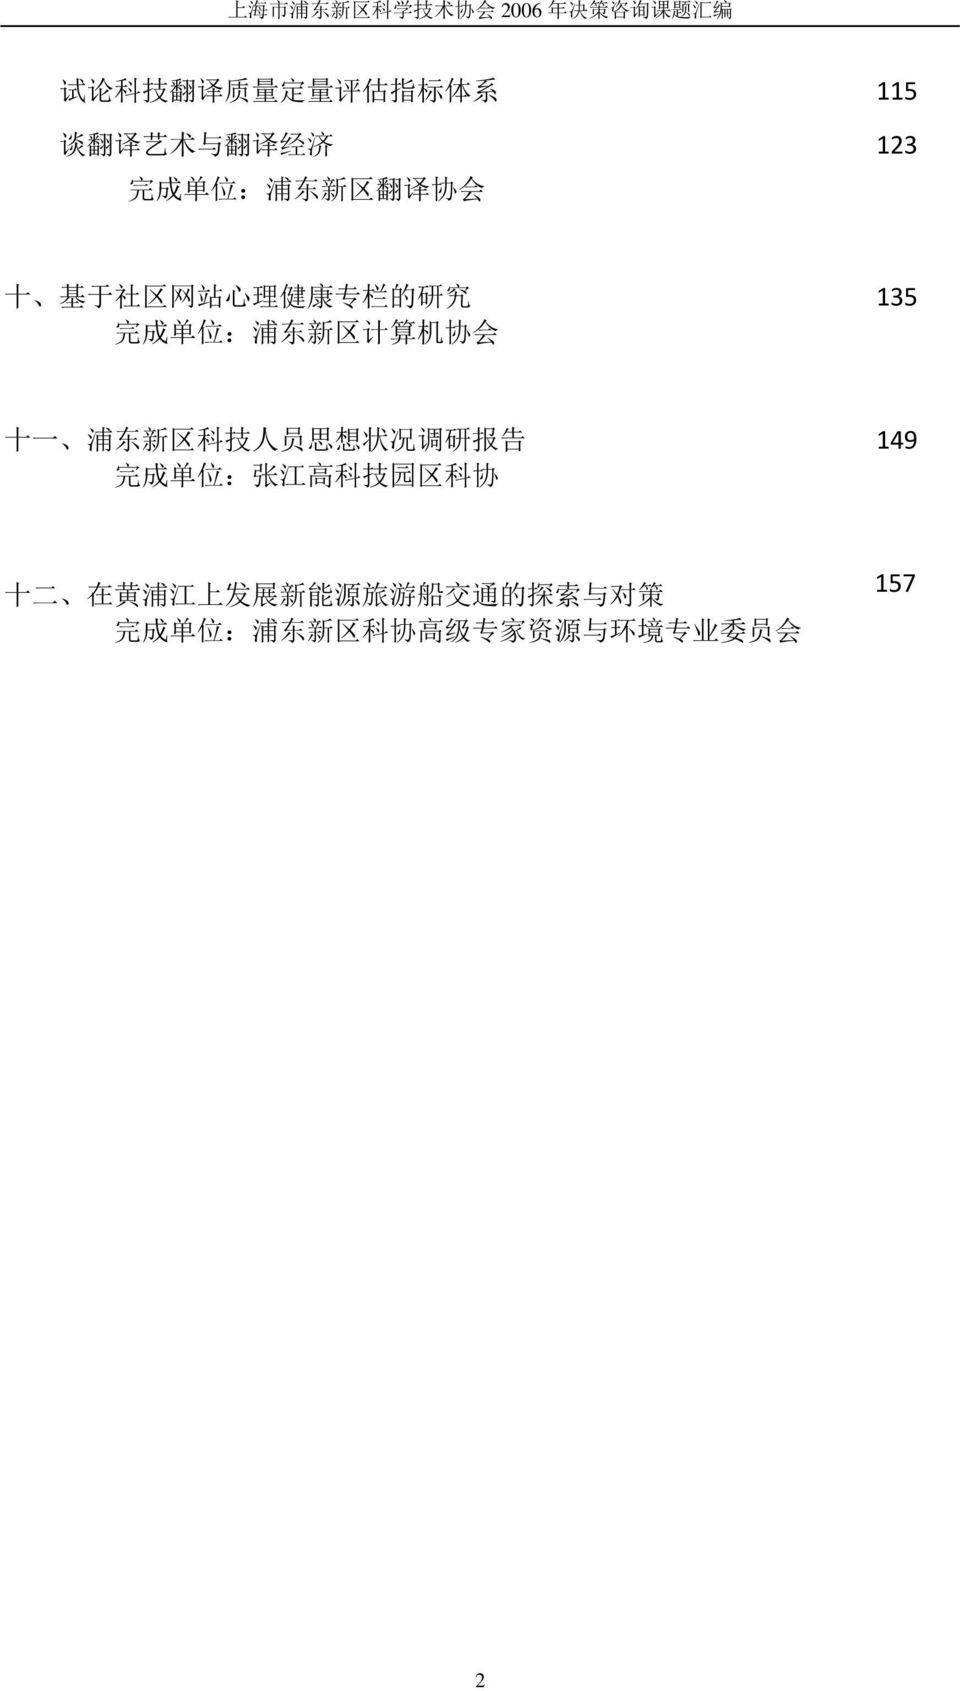 新 区 科 技 人 员 思 想 状 况 调 研 报 告 完 成 单 位 : 张 江 高 科 技 园 区 科 协 149 十 二 在 黄 浦 江 上 发 展 新